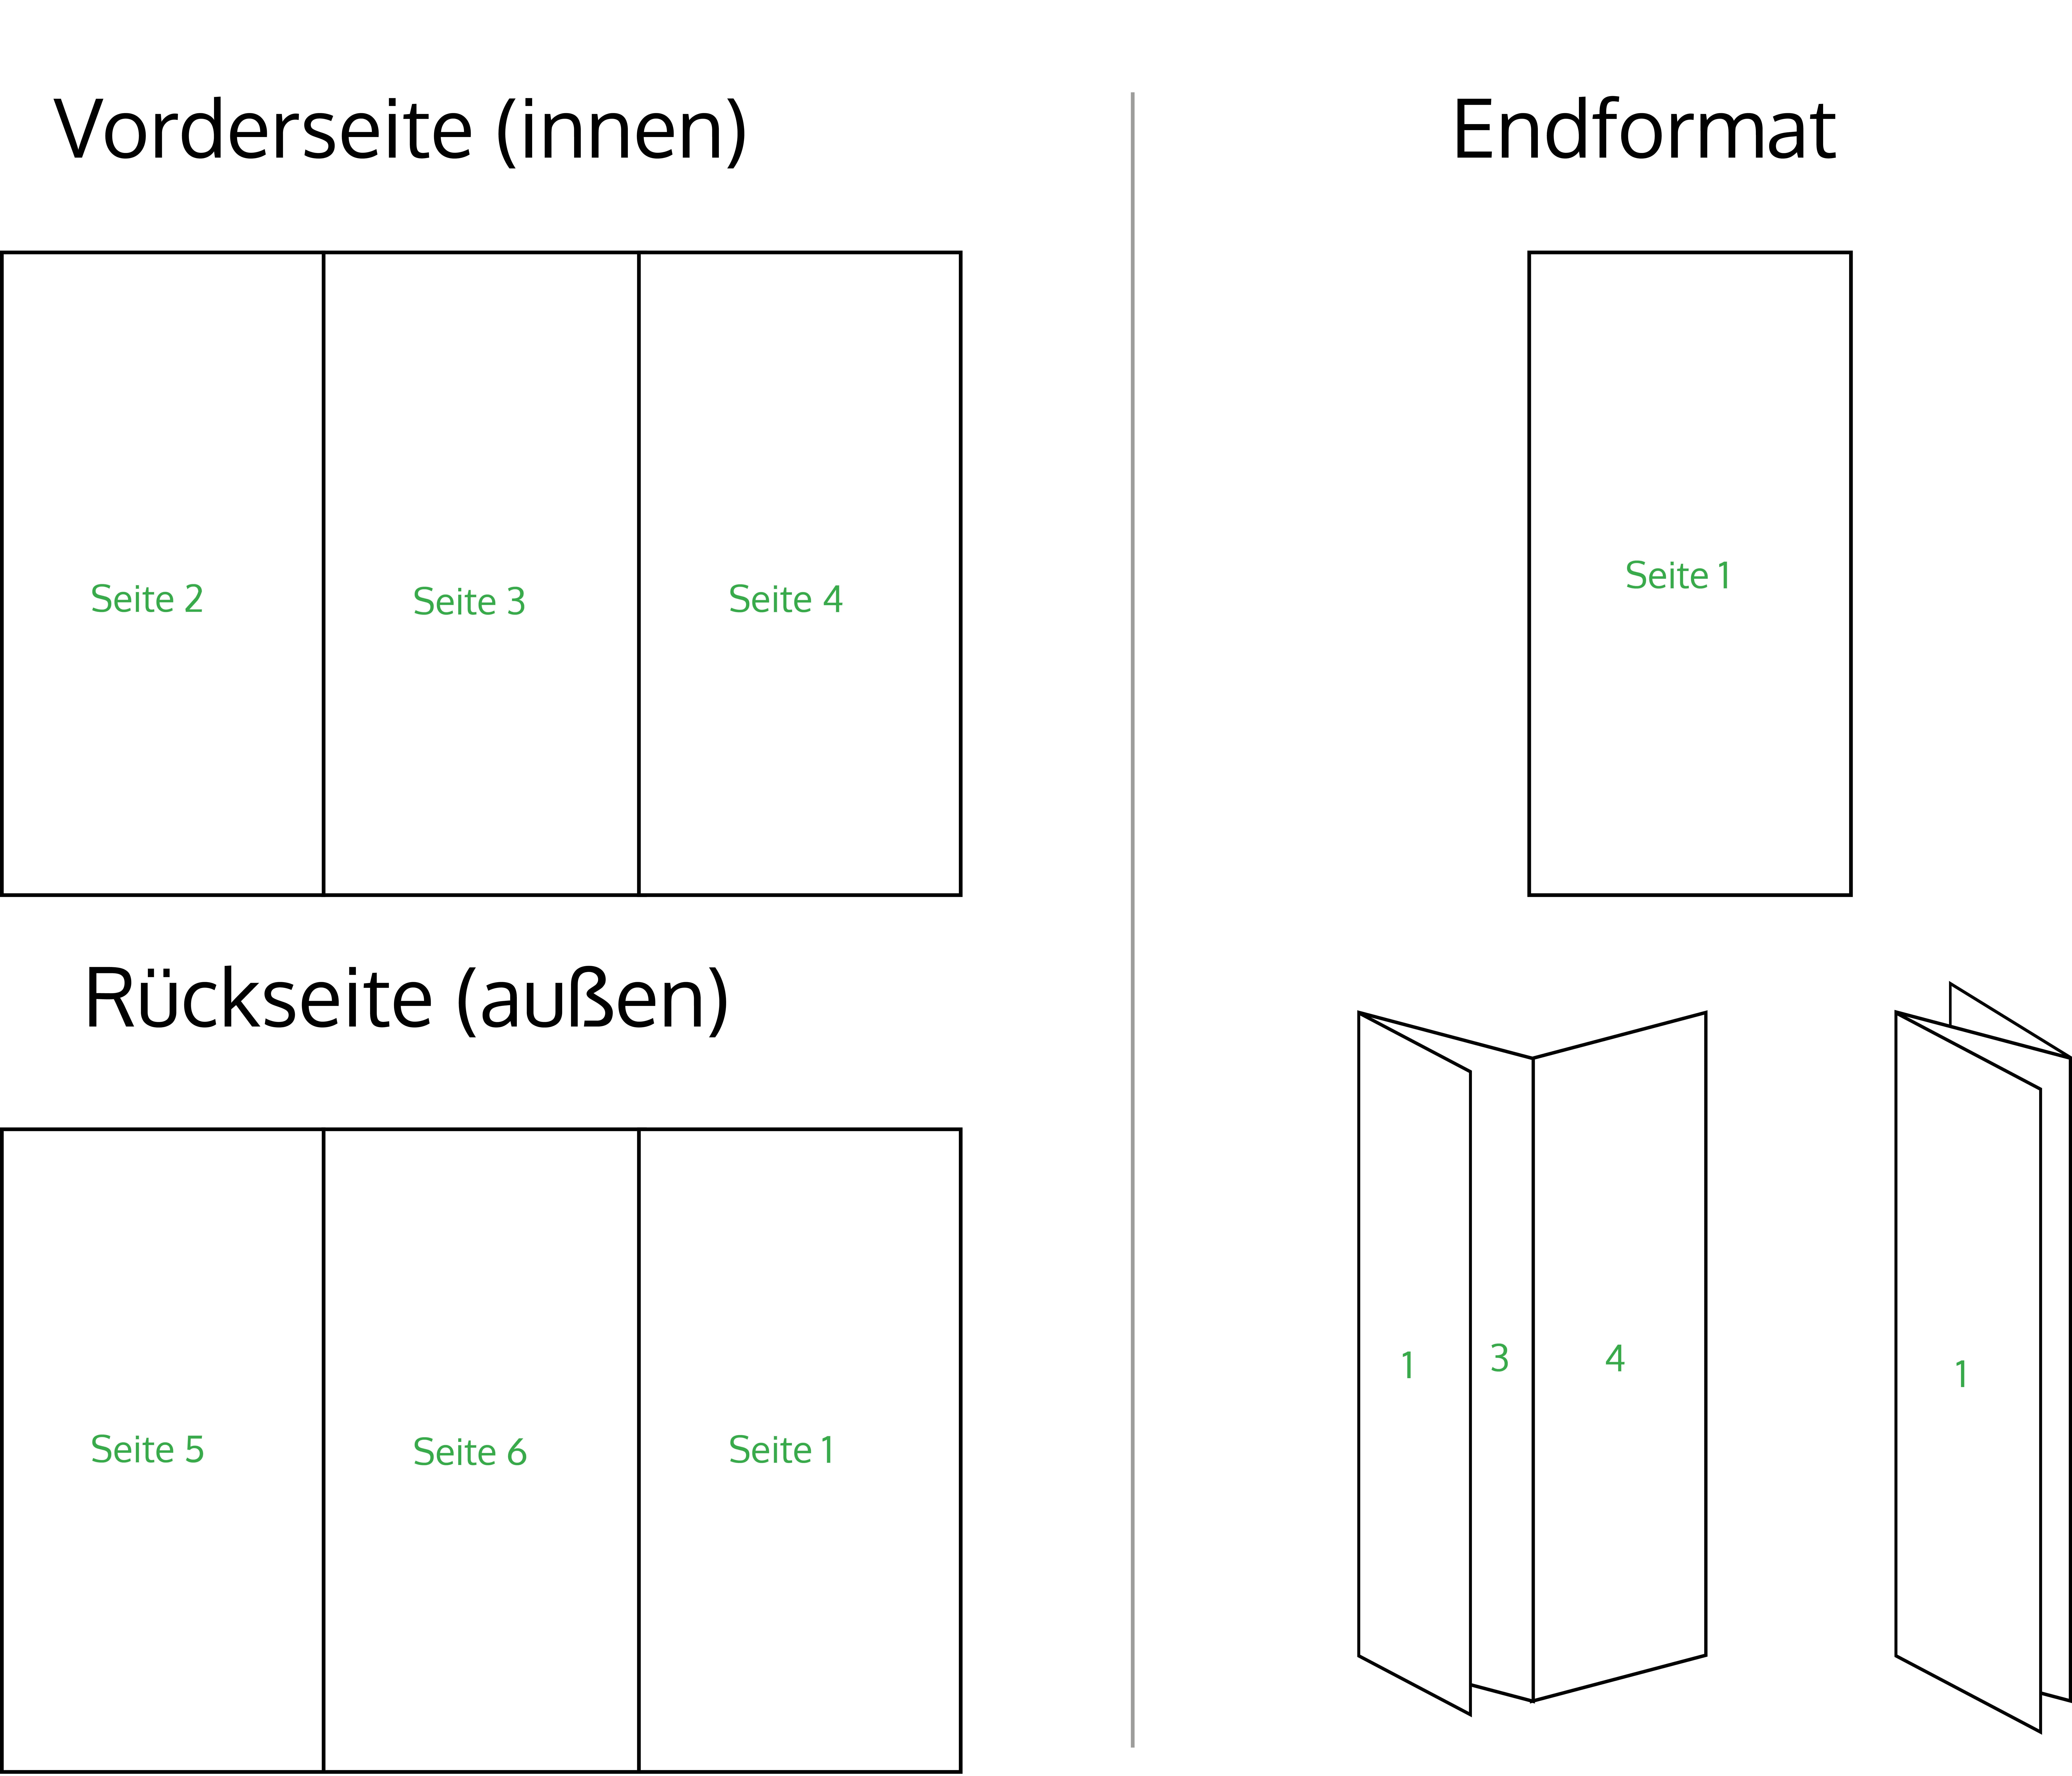 Folder mit Zickzack Aufbau, Struktur und Reihenfolge der Seiten